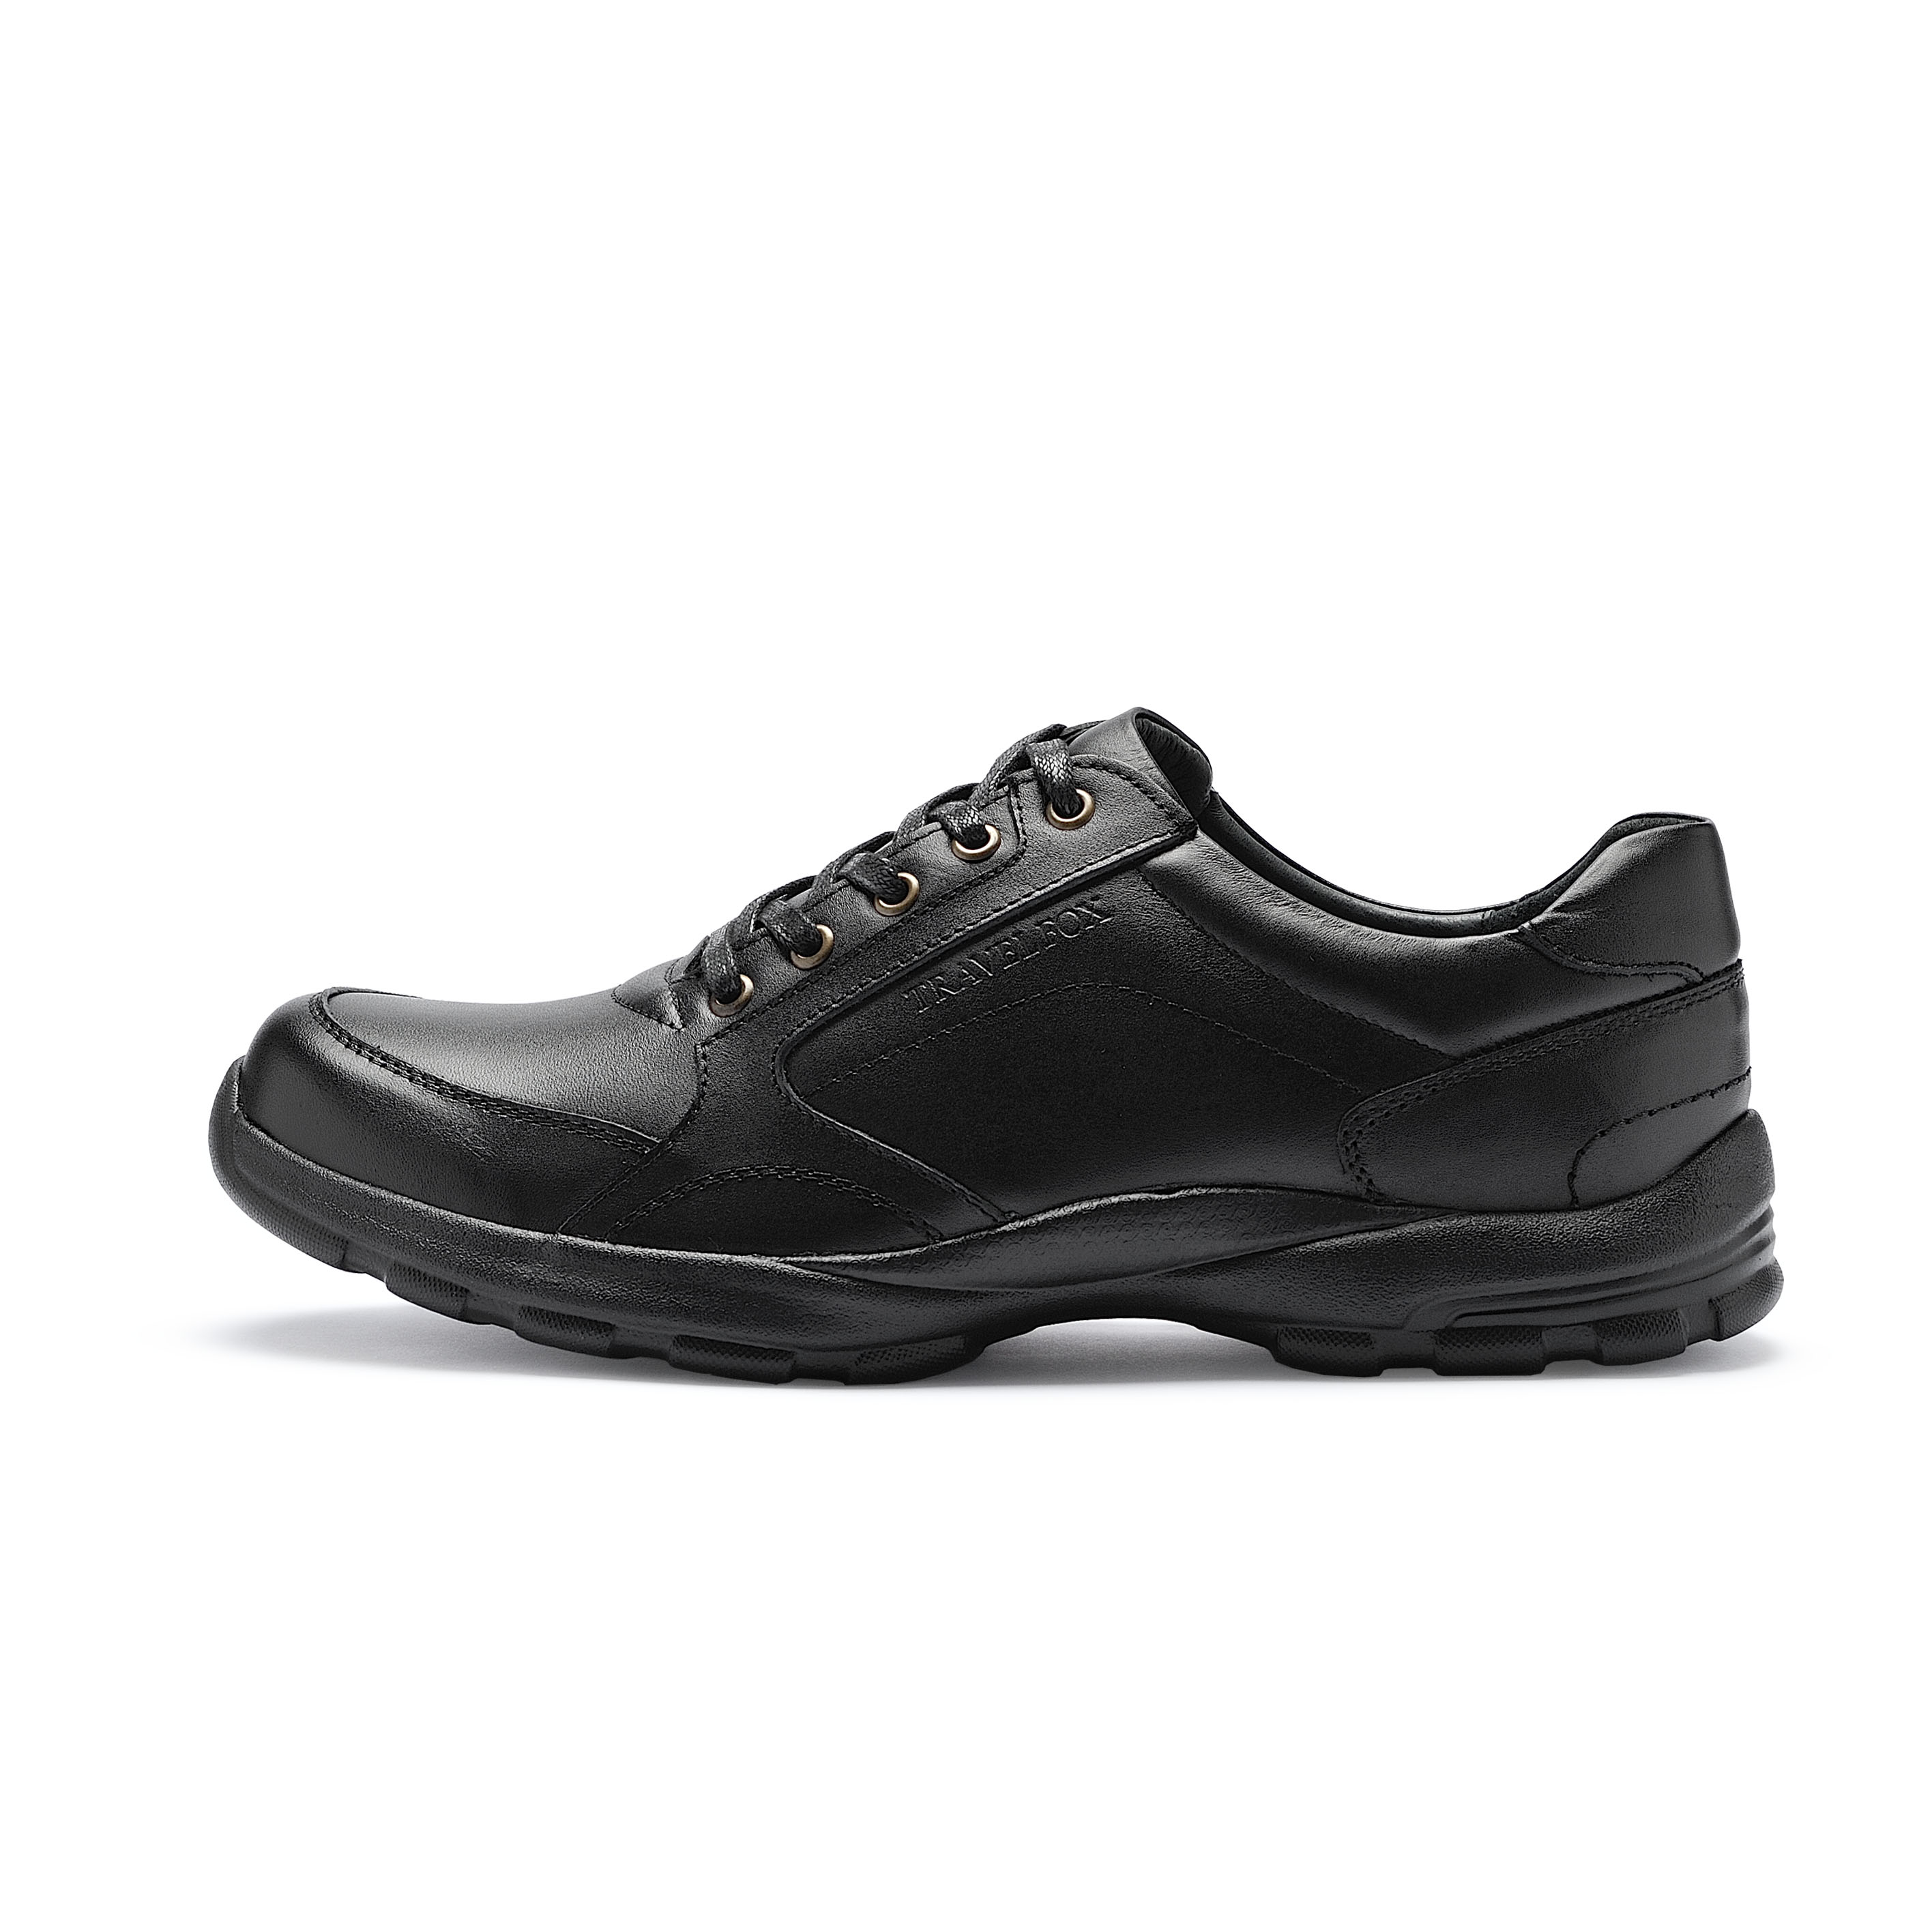 舒適休閒紳士鞋(鞋帶款)-黑917642-301